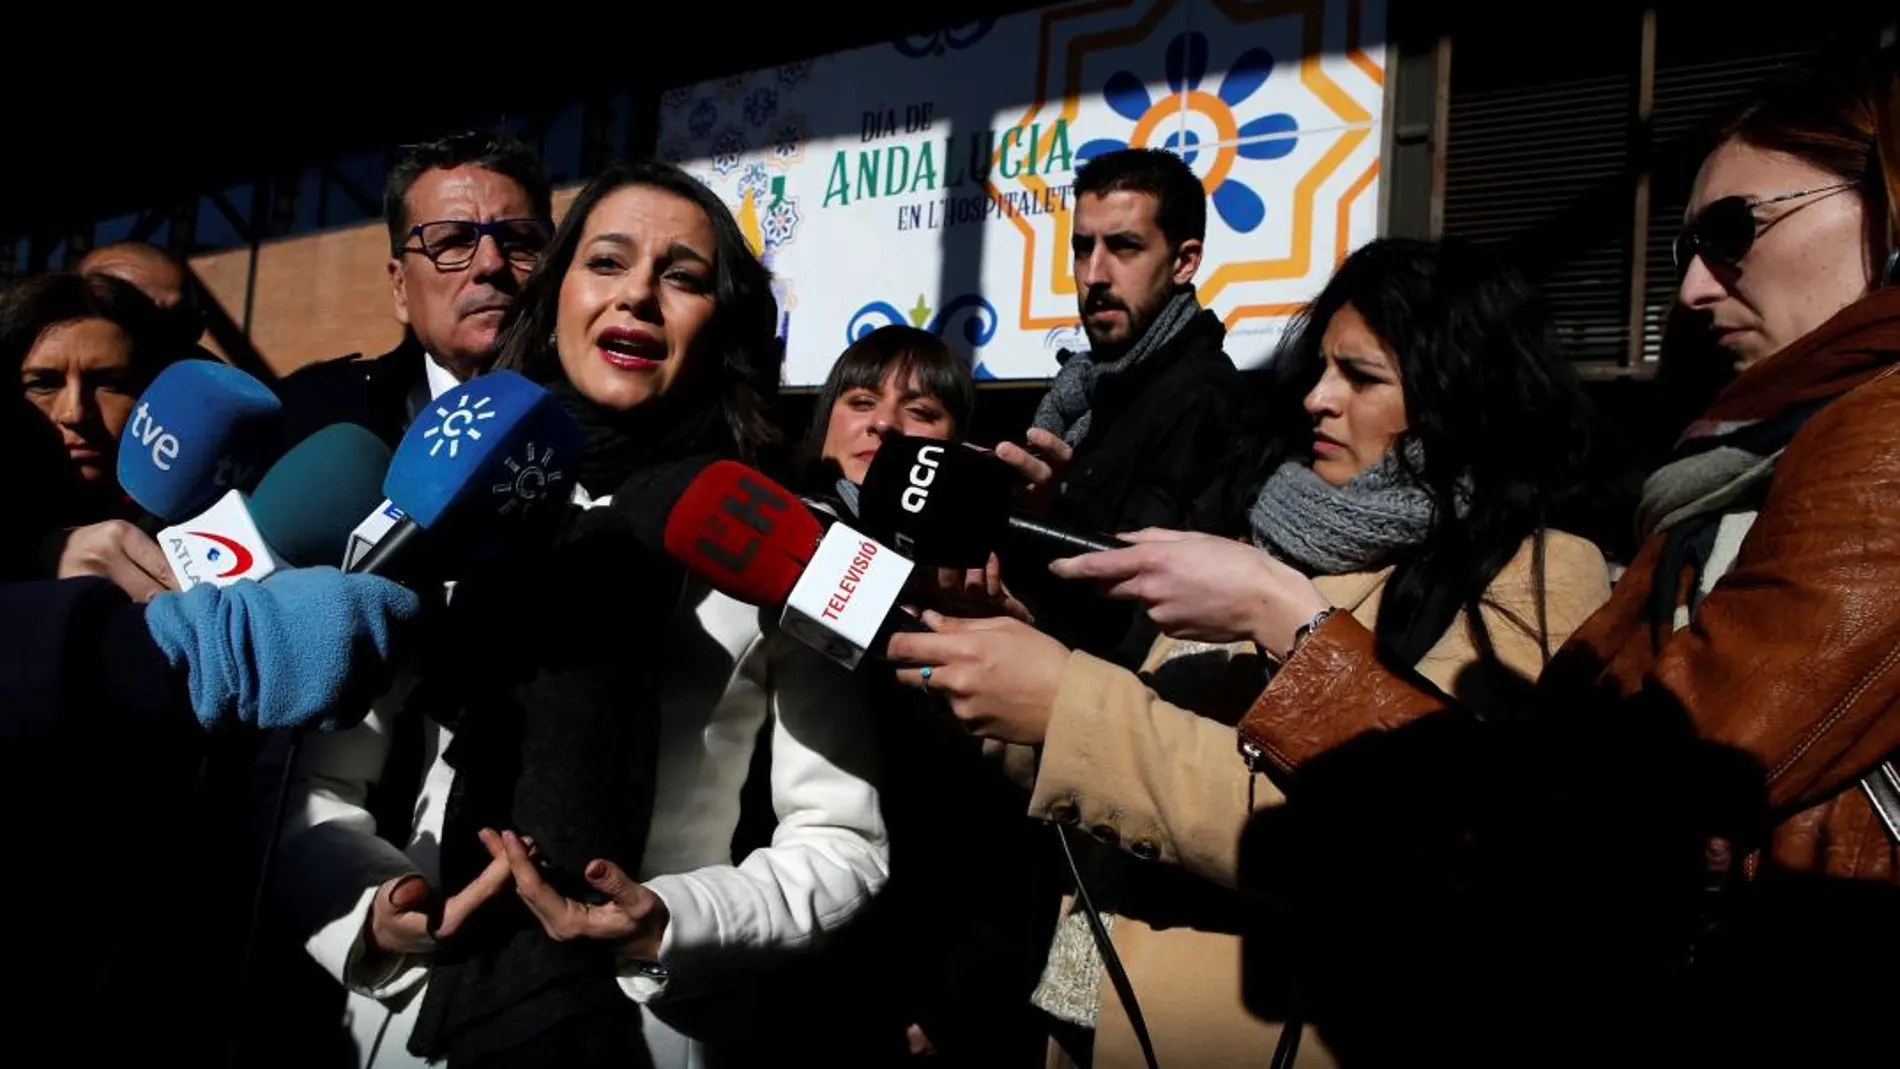 La líder de Ciudadanos en Cataluña, Inés Arrimadas, atiende a los medios durante su visita a la celebración del Día de Andalucía en Hospitalet de Llobregat